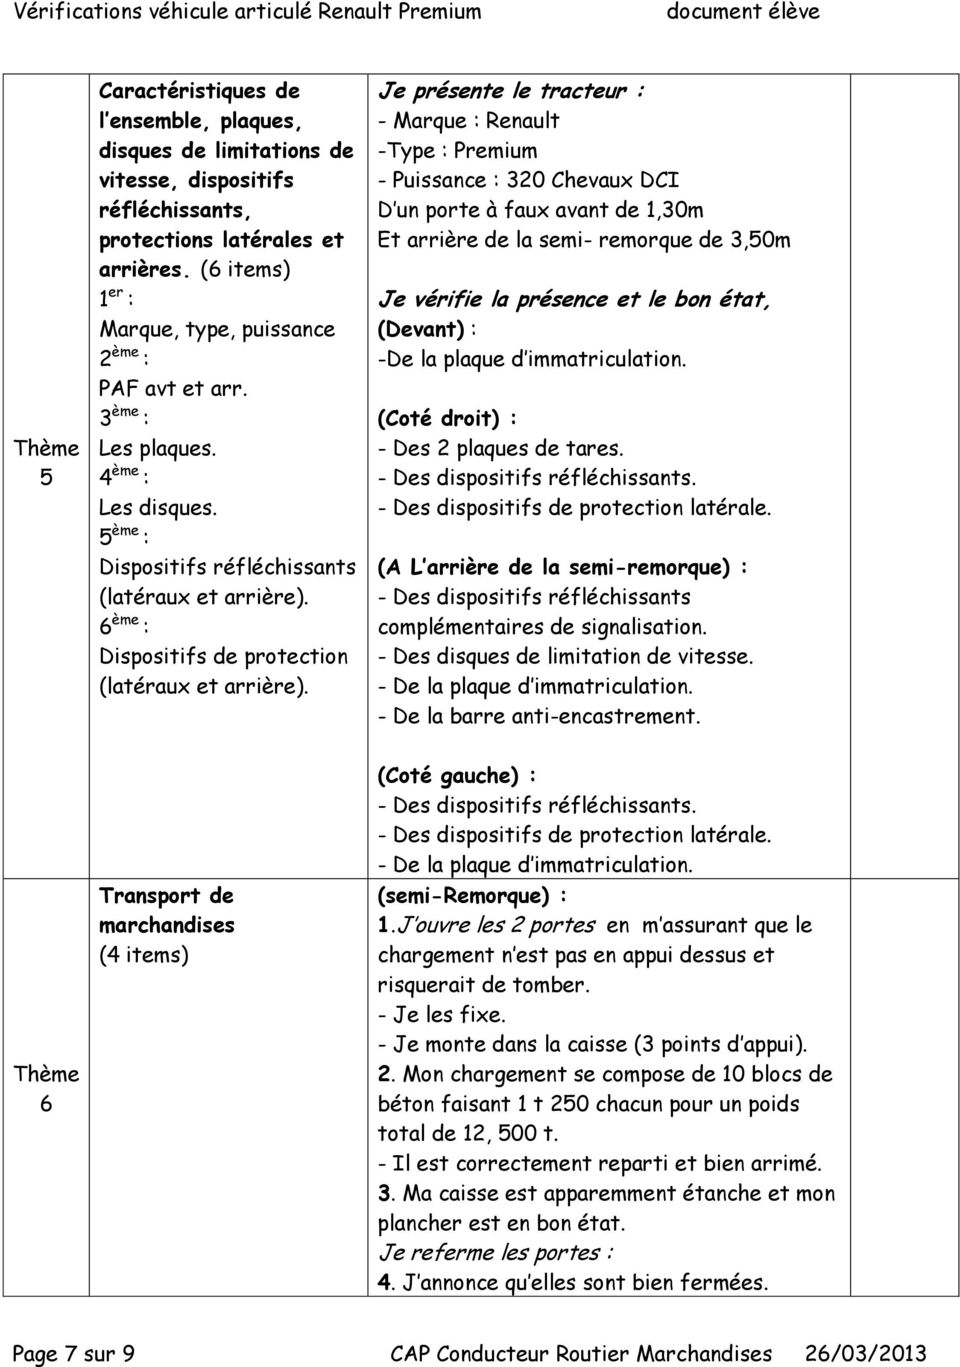 6 ème : Dispositifs de protection (latéraux et arrière).